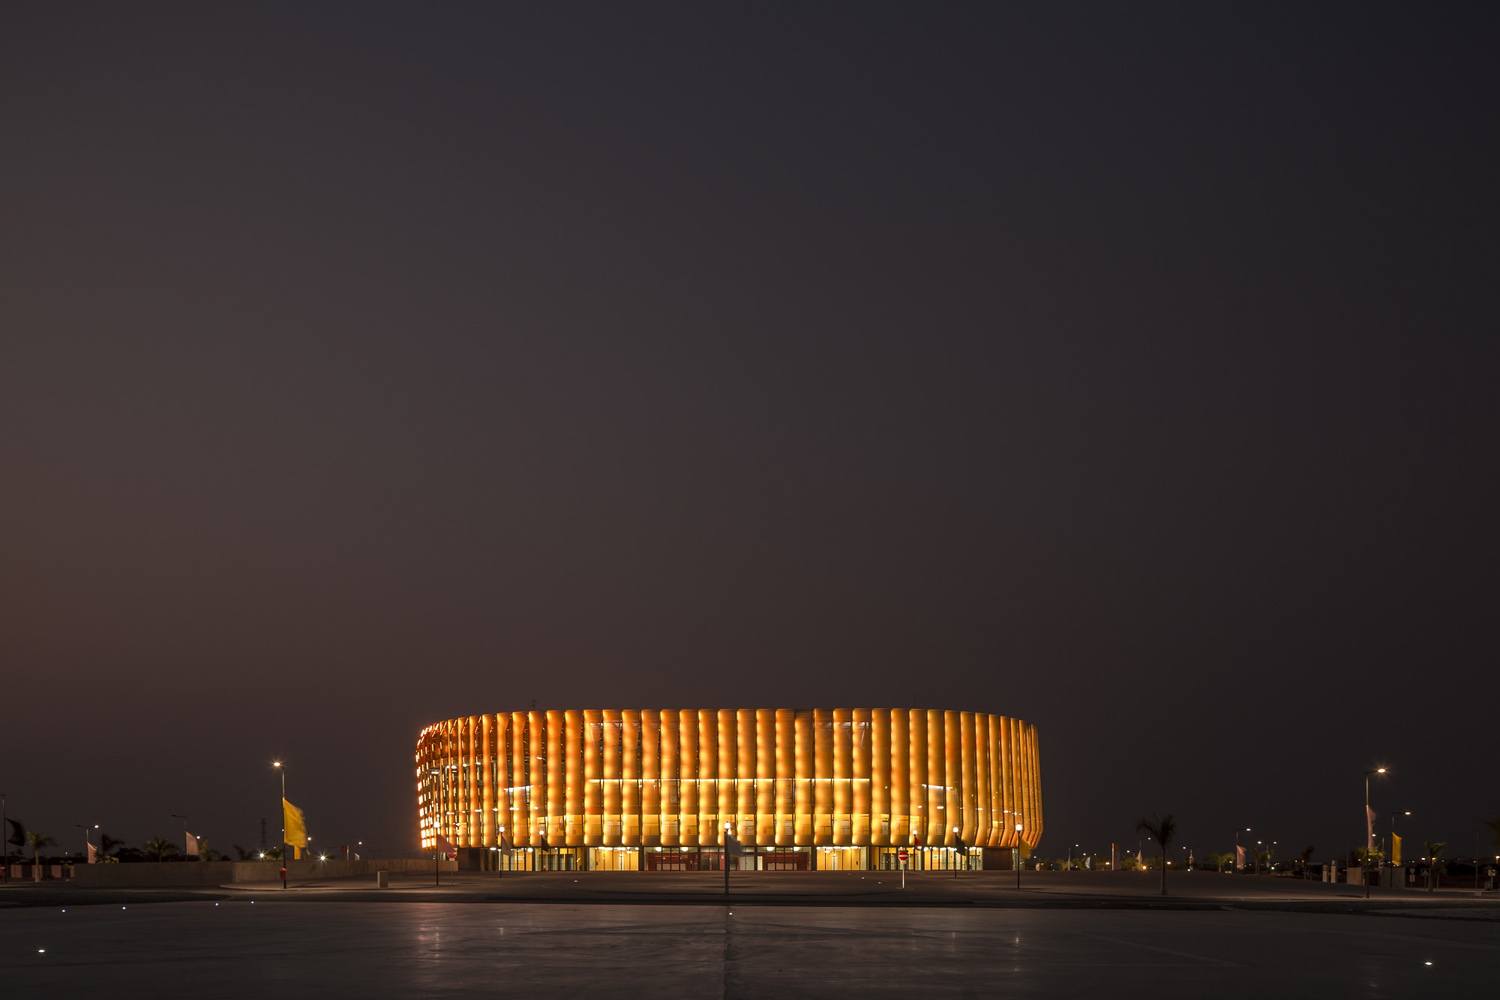 mm_Luanda Multisports Pavilion design by Berger Arquitectos_03